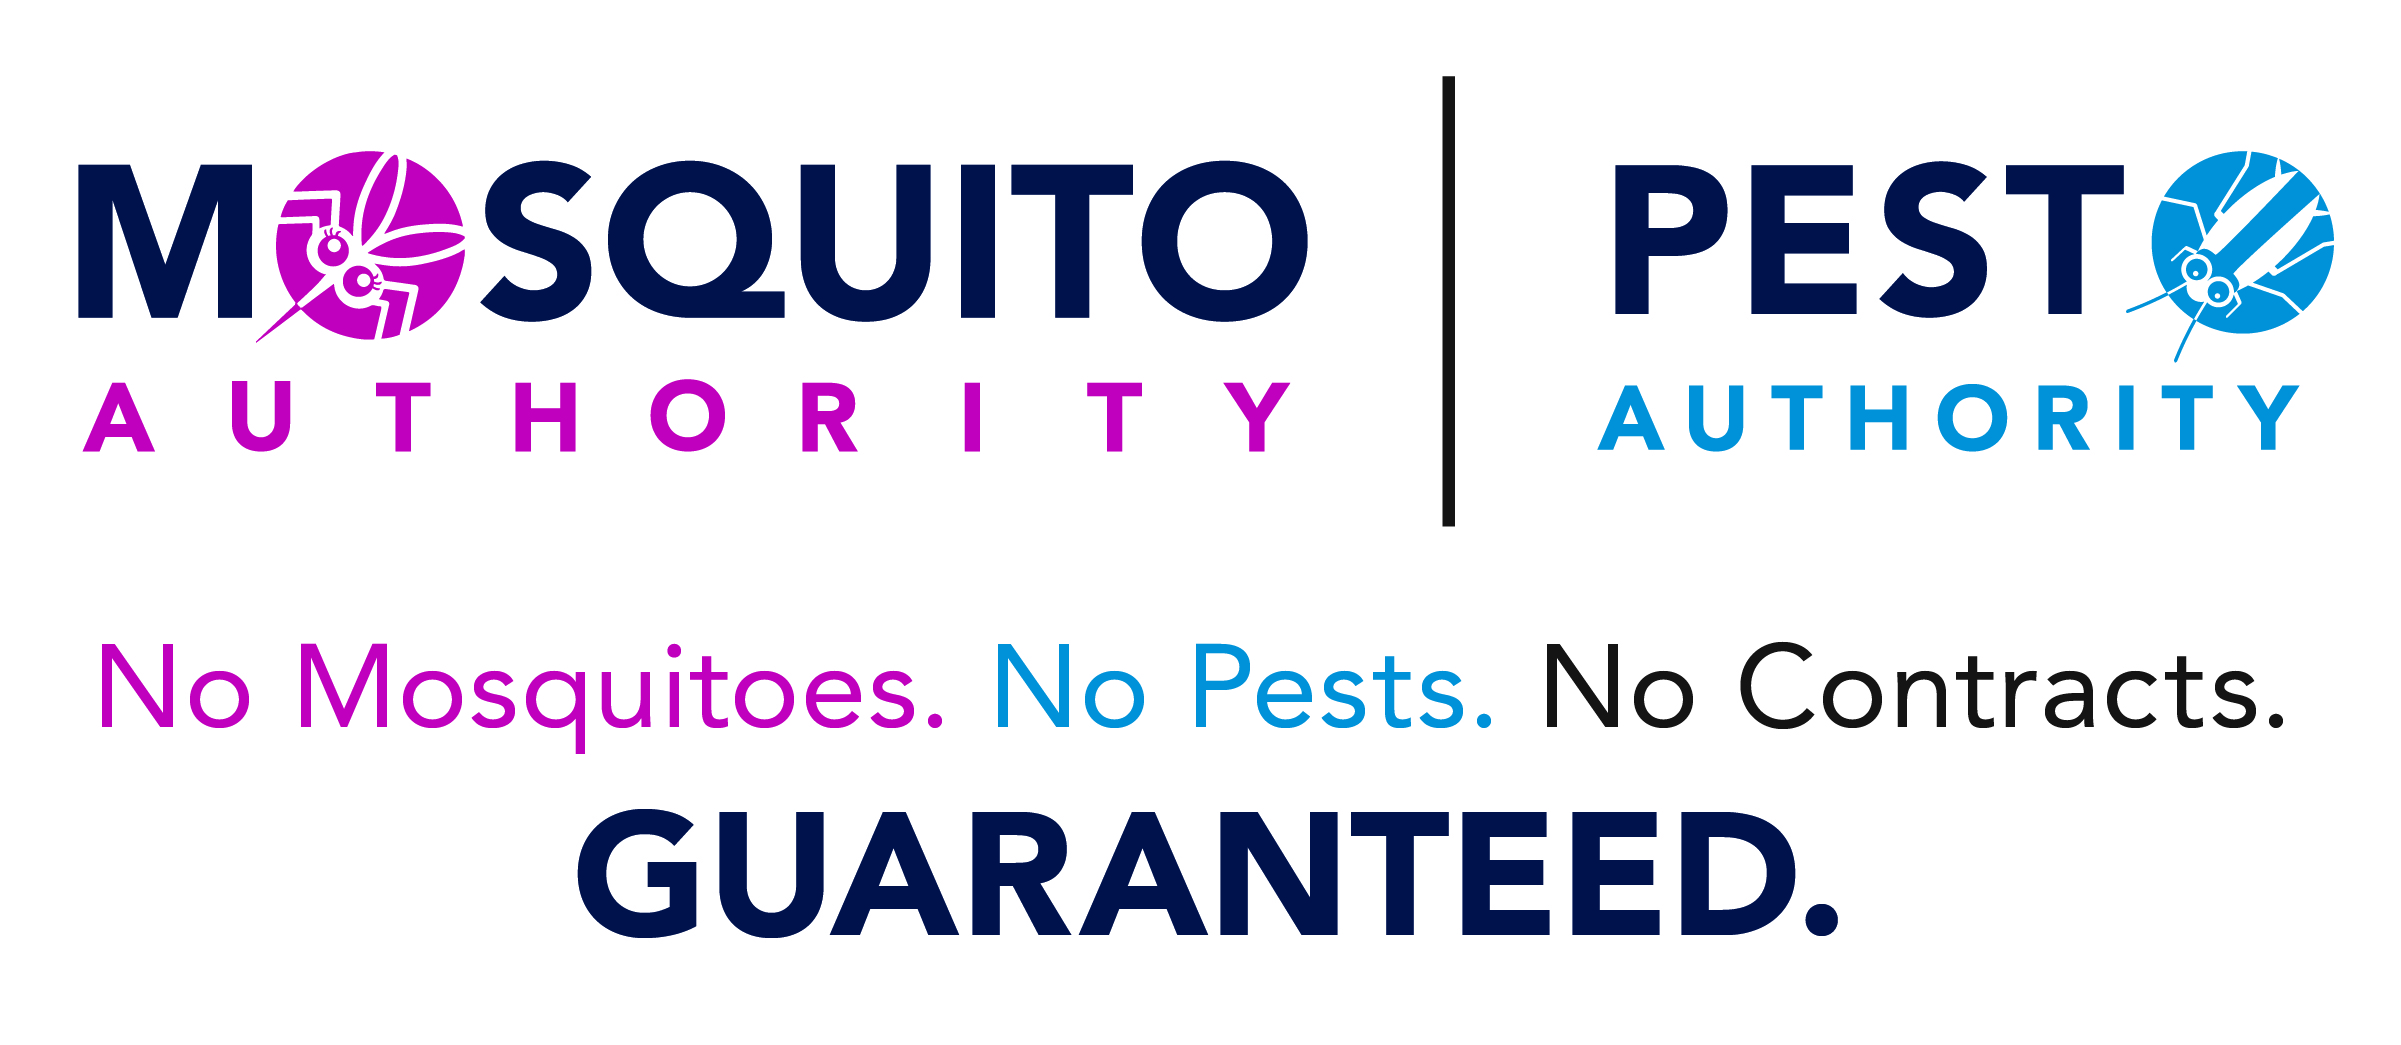 Mosquito Authority/Pest Authority Logo